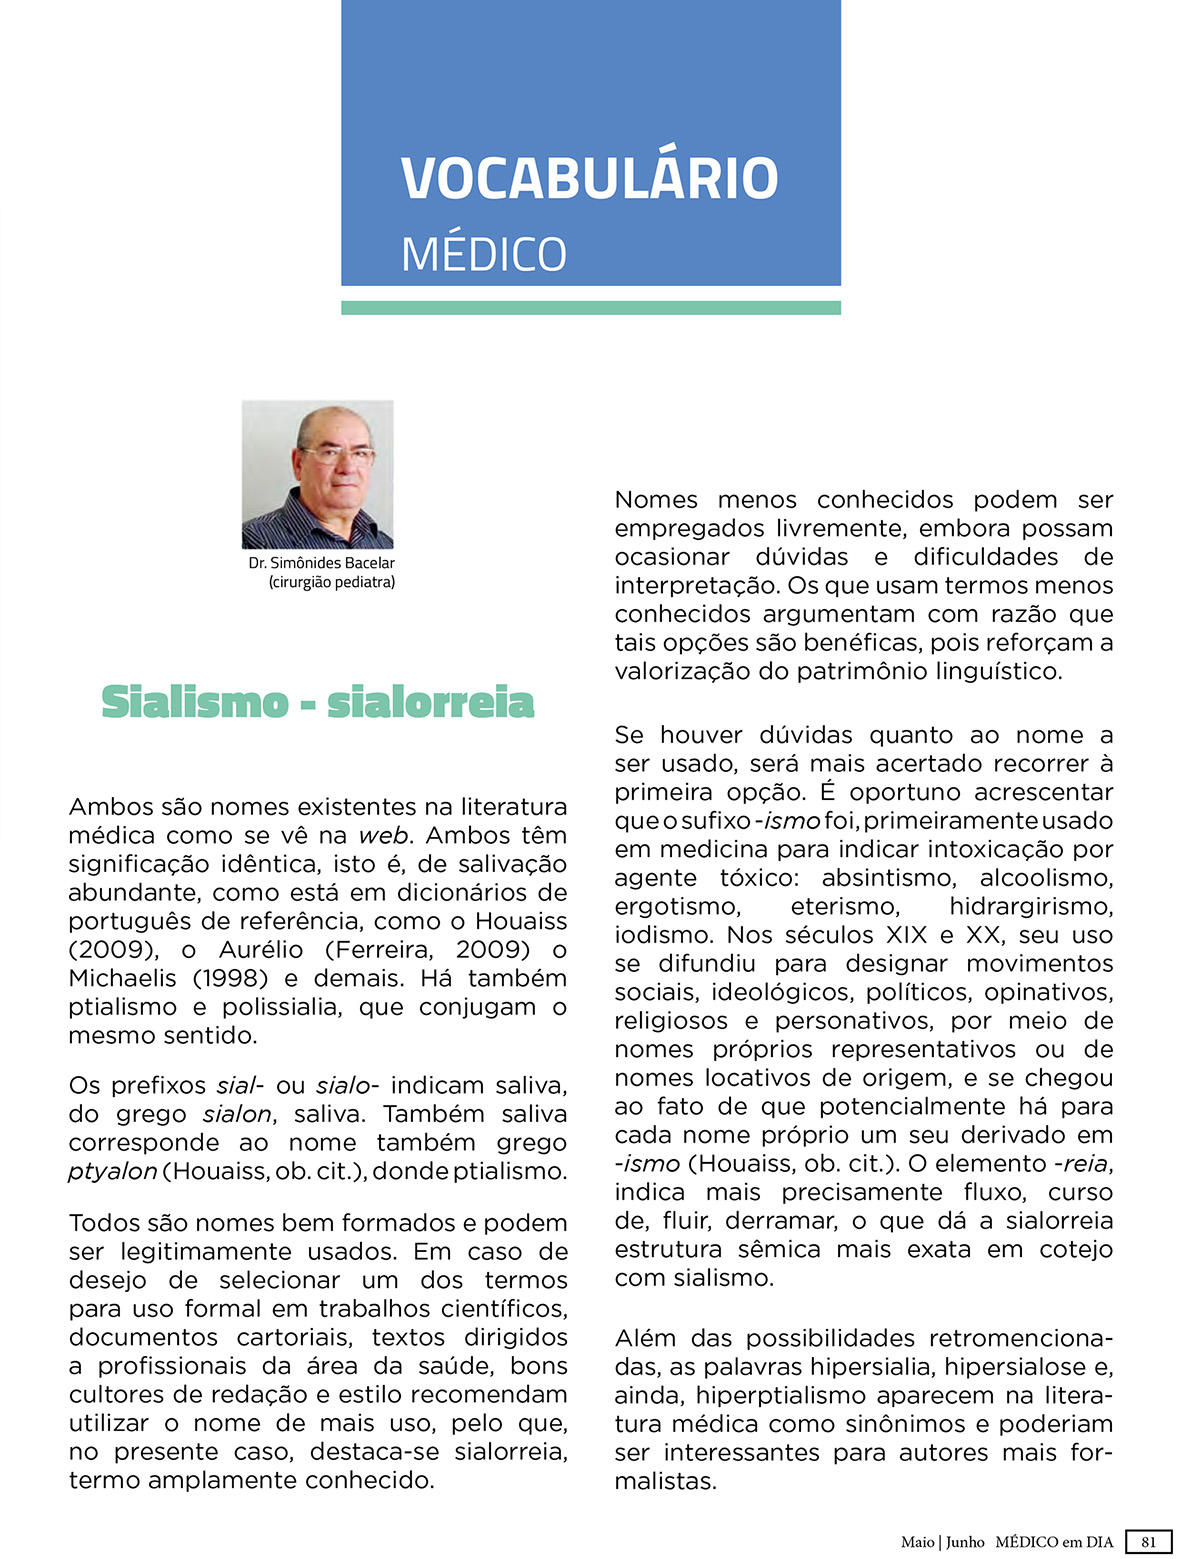 Revista Medico em Dia Maio Junho Digital 81